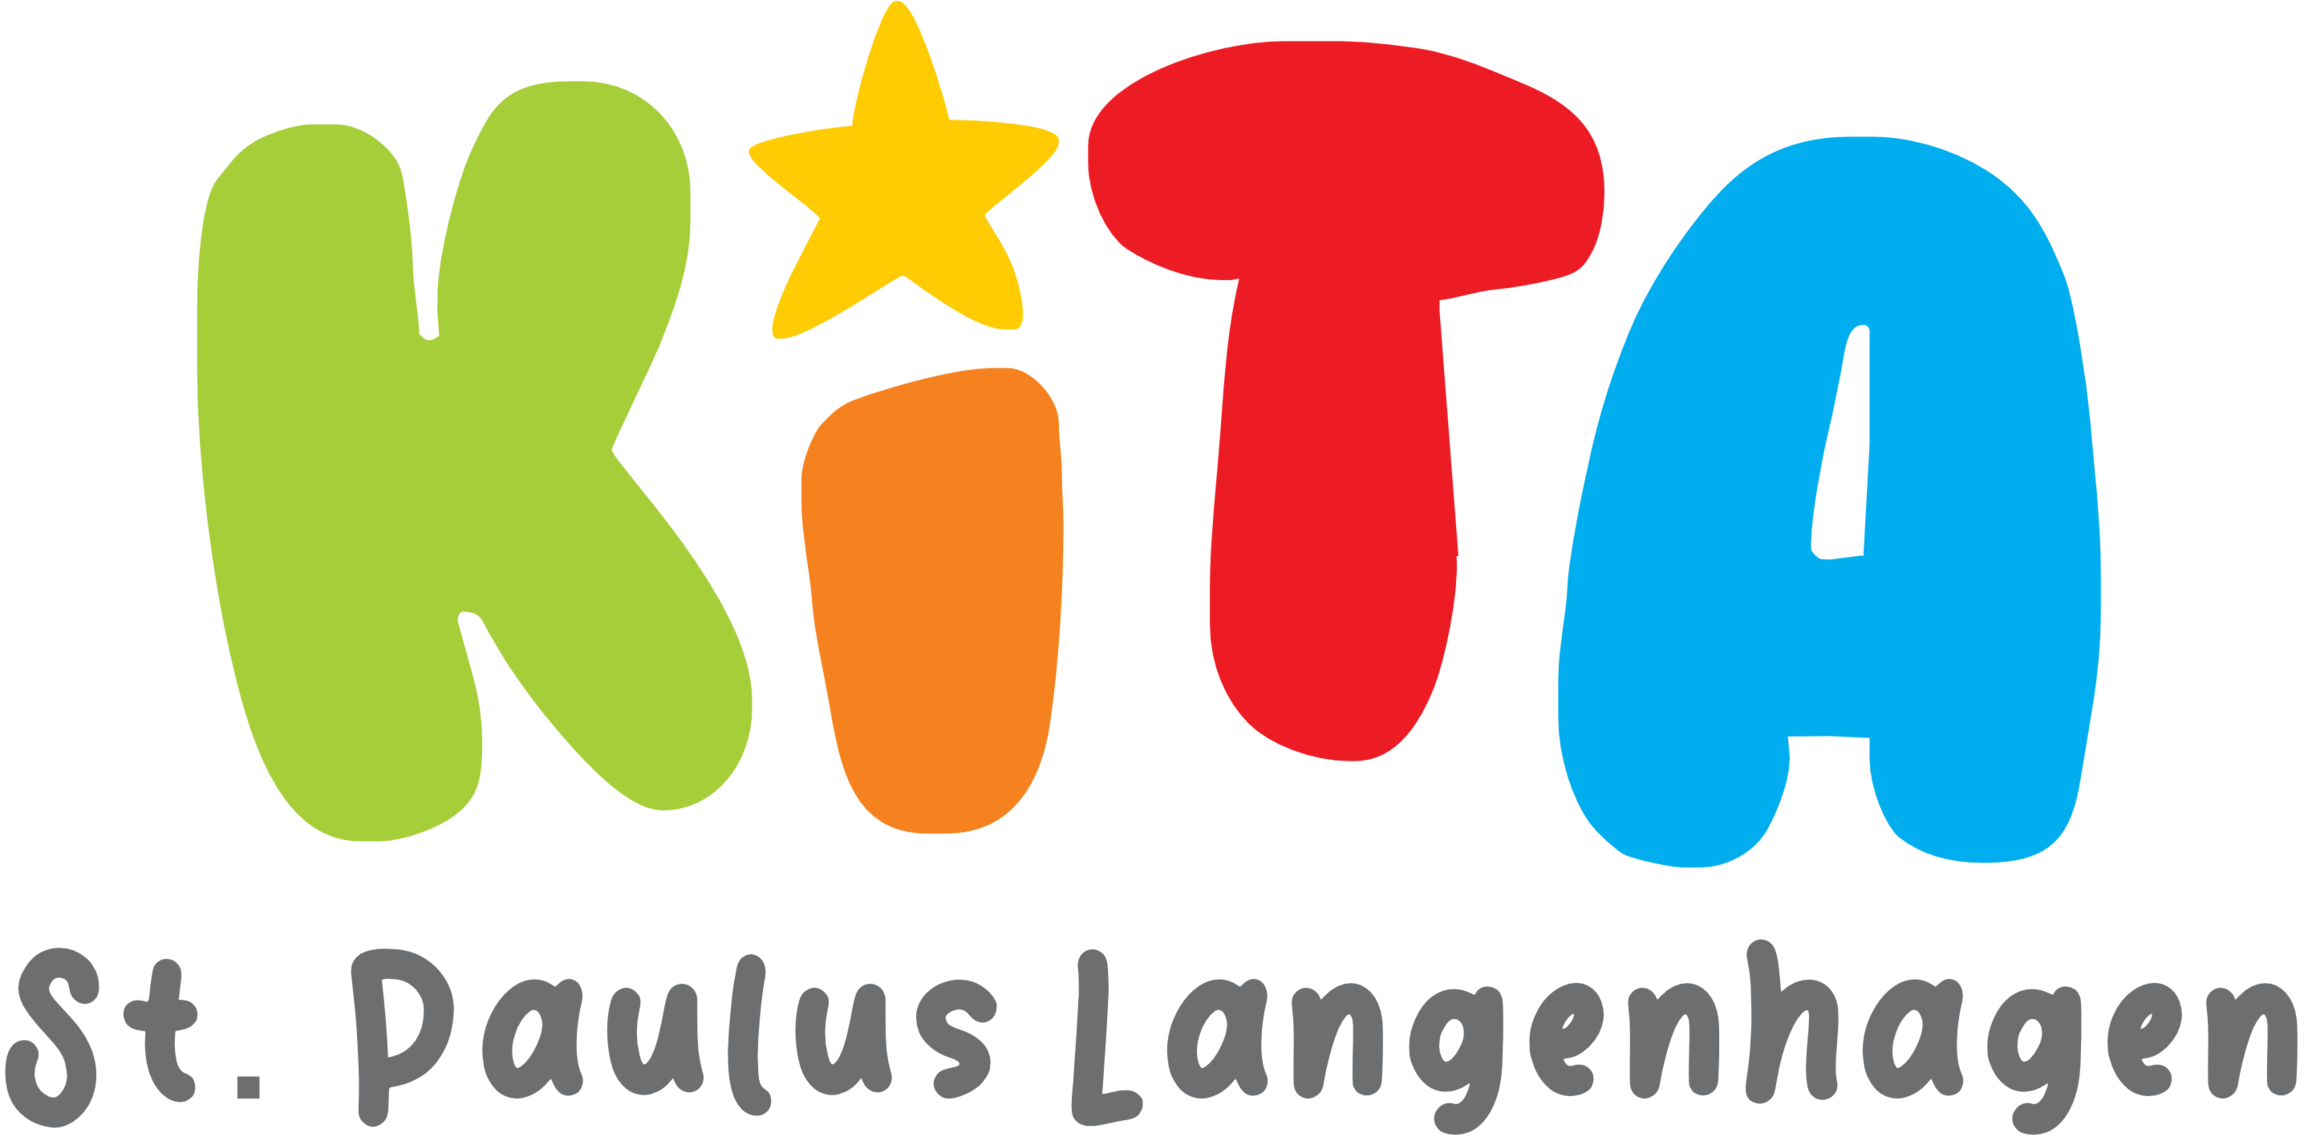 St.-Paulus Kindergarten